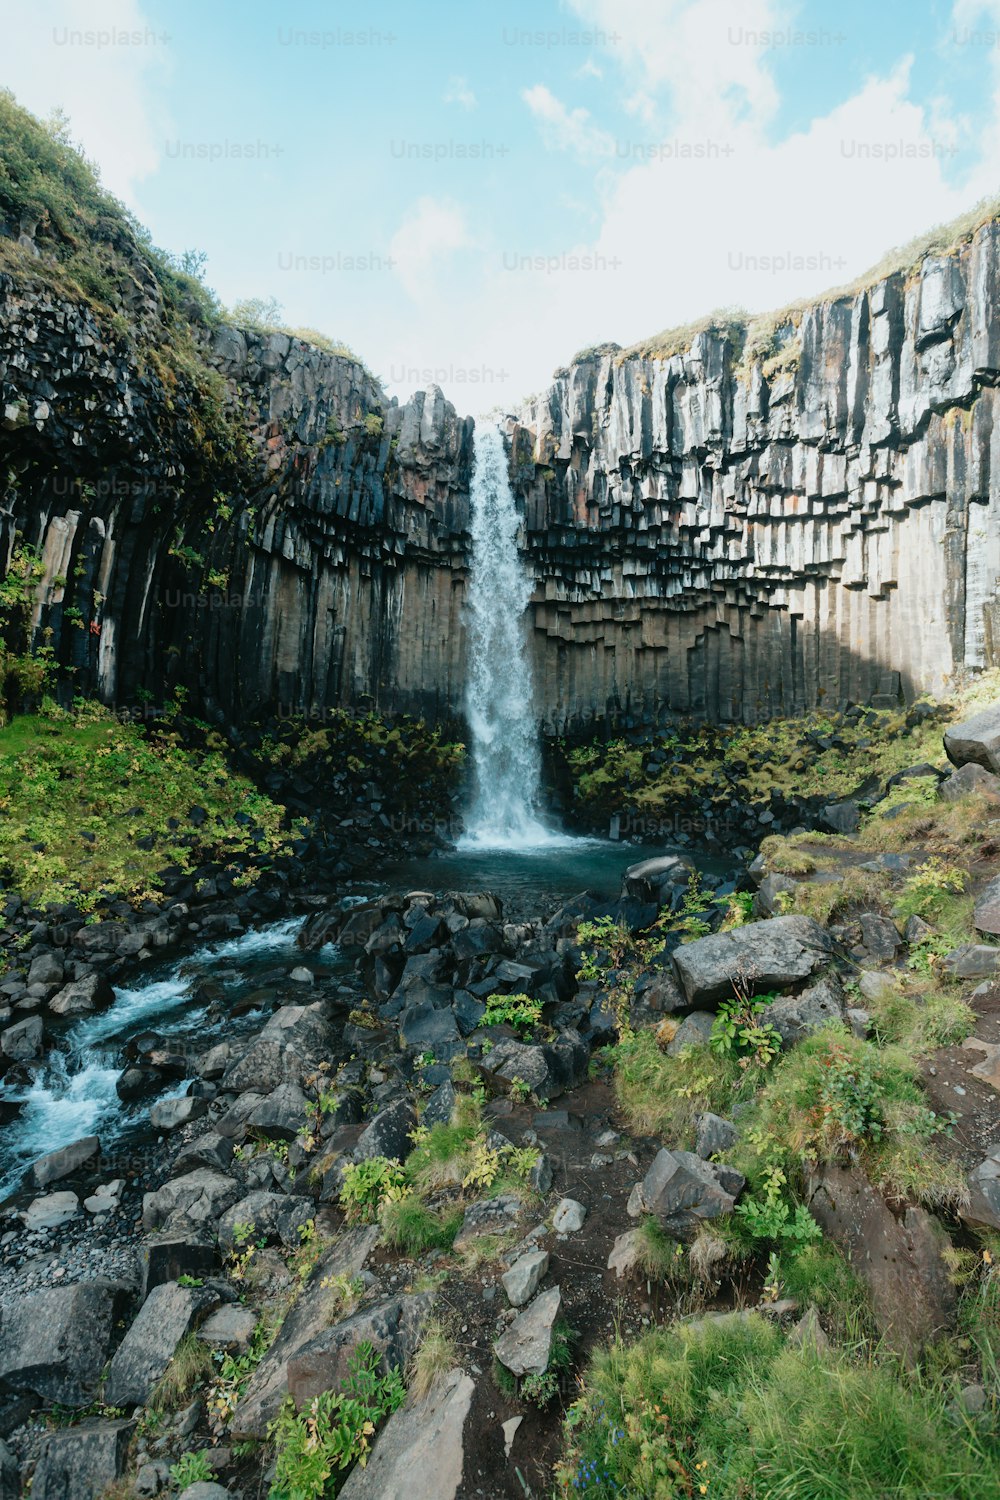 Una cascata sta uscendo dalle rocce nell'acqua